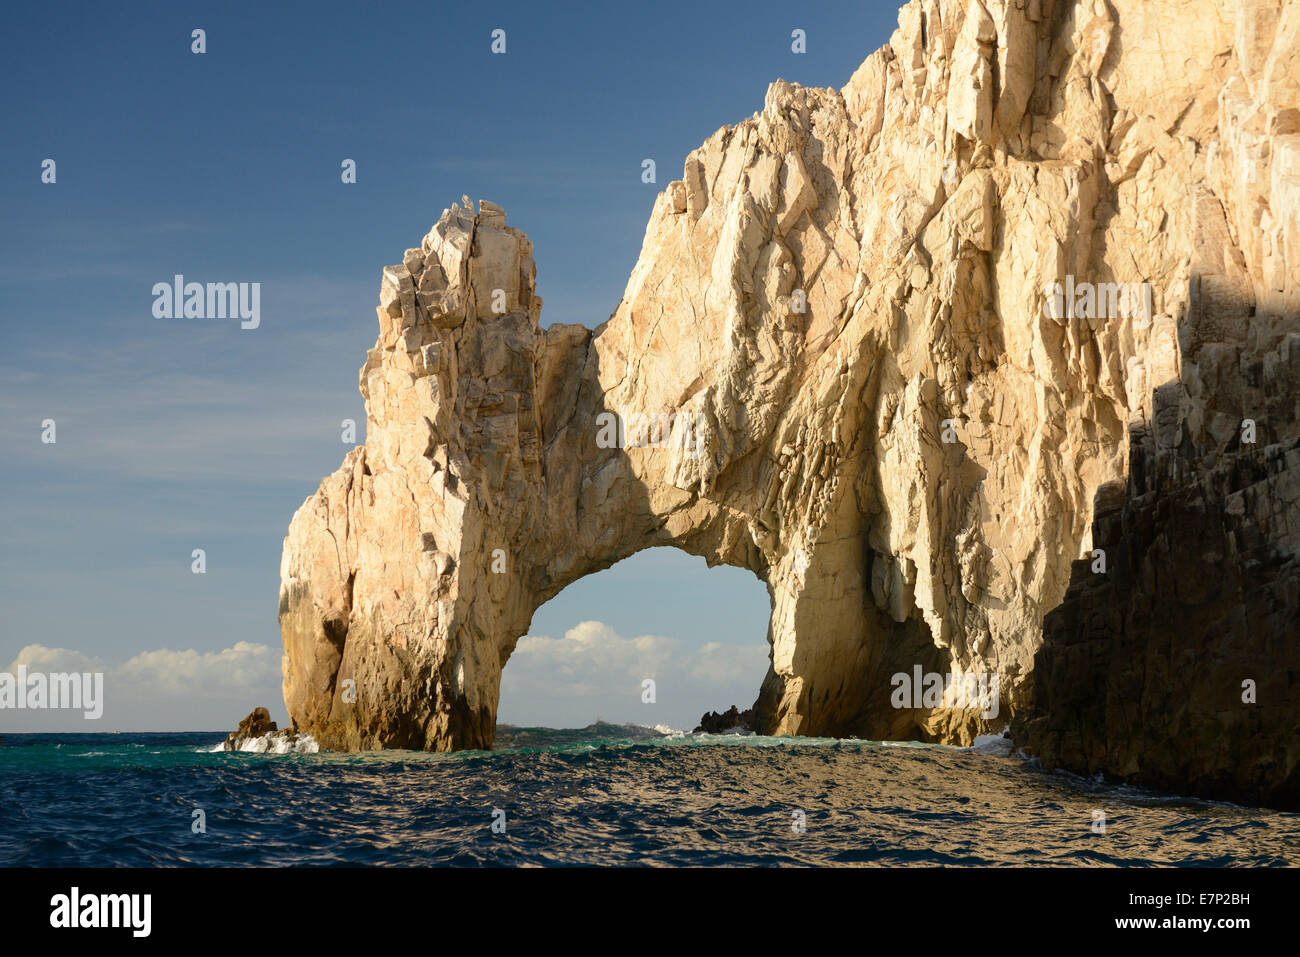 Messico, America del Nord, Baja, Baja California, Cabo San Lucas, Los Cabos, Lands End, el arco, arco, mare, paesaggio, rock, cliff Foto Stock